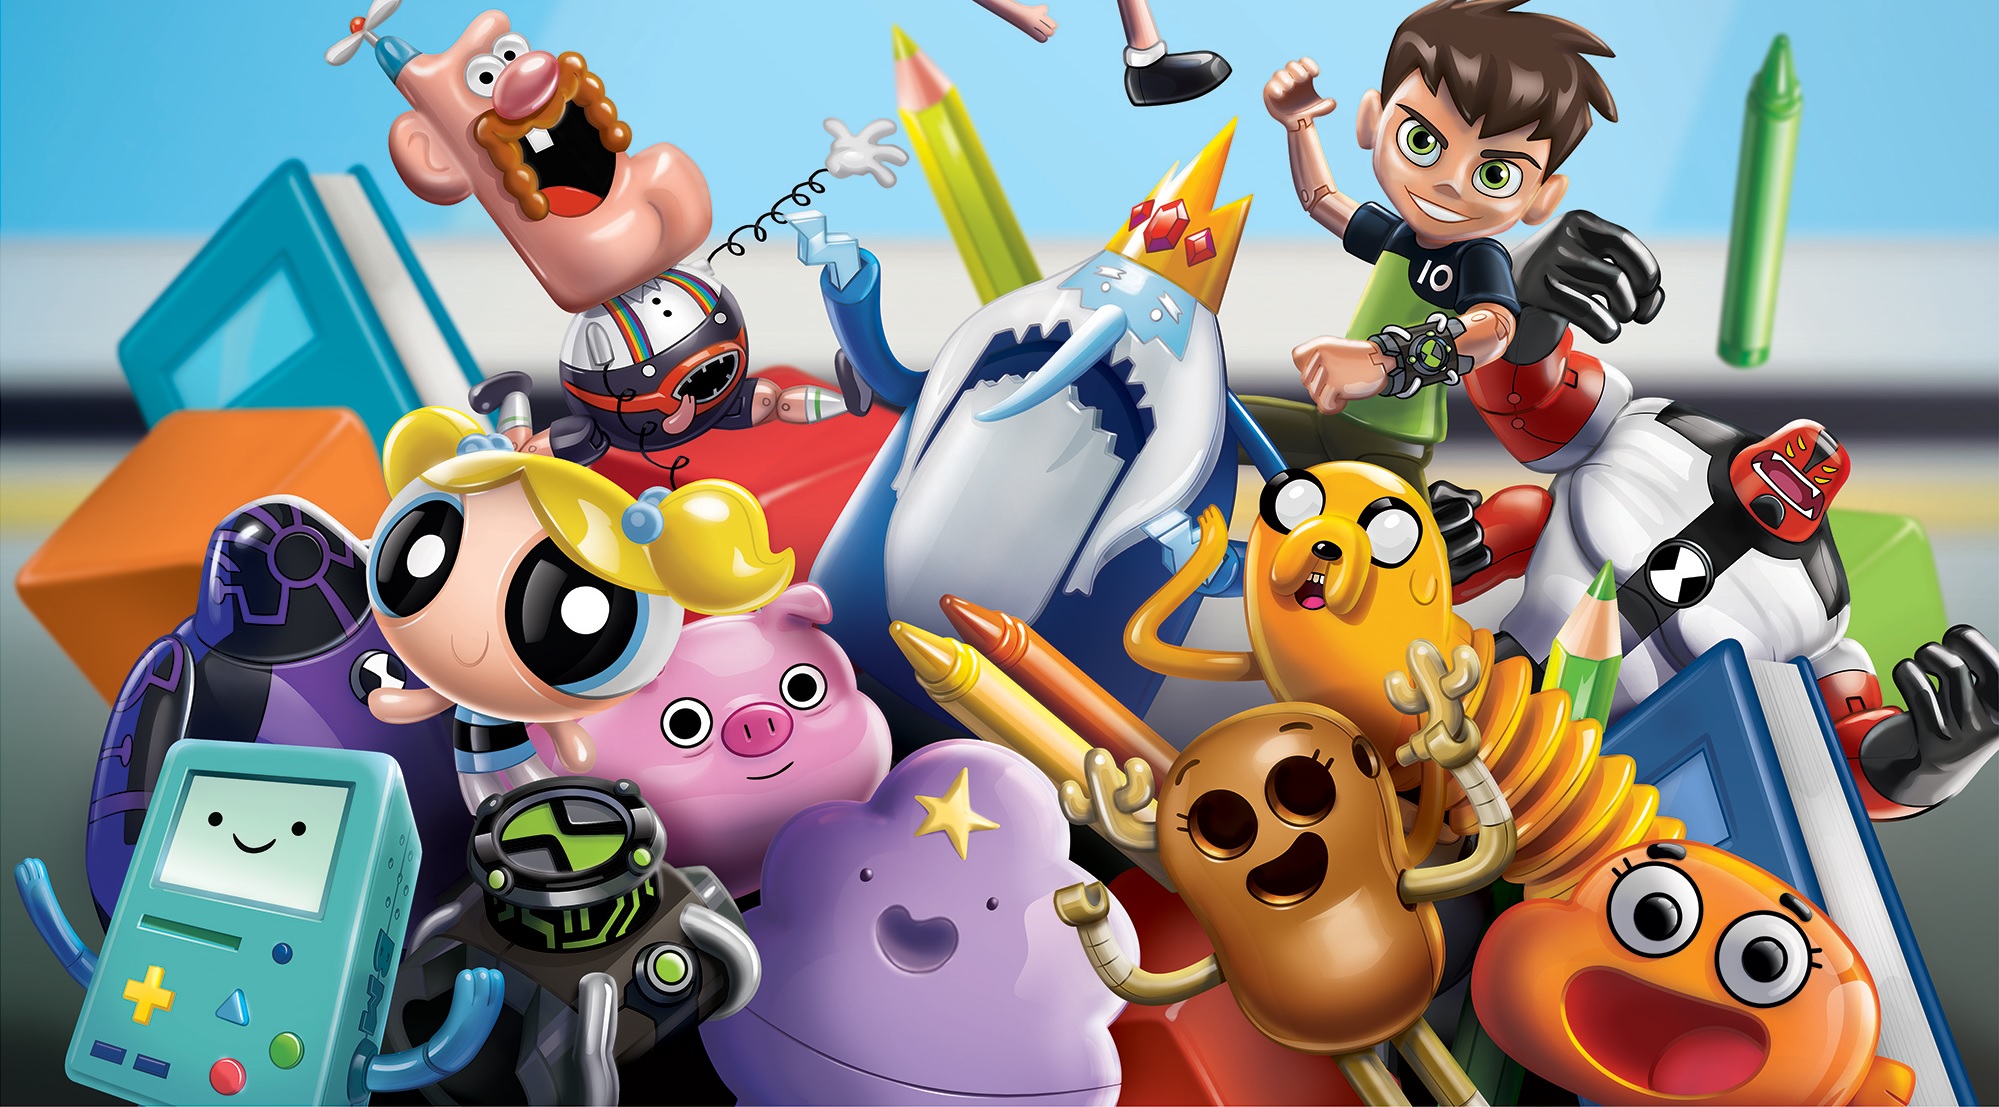 Preferido das crianças, Cartoon Network alcança feito surpreendente